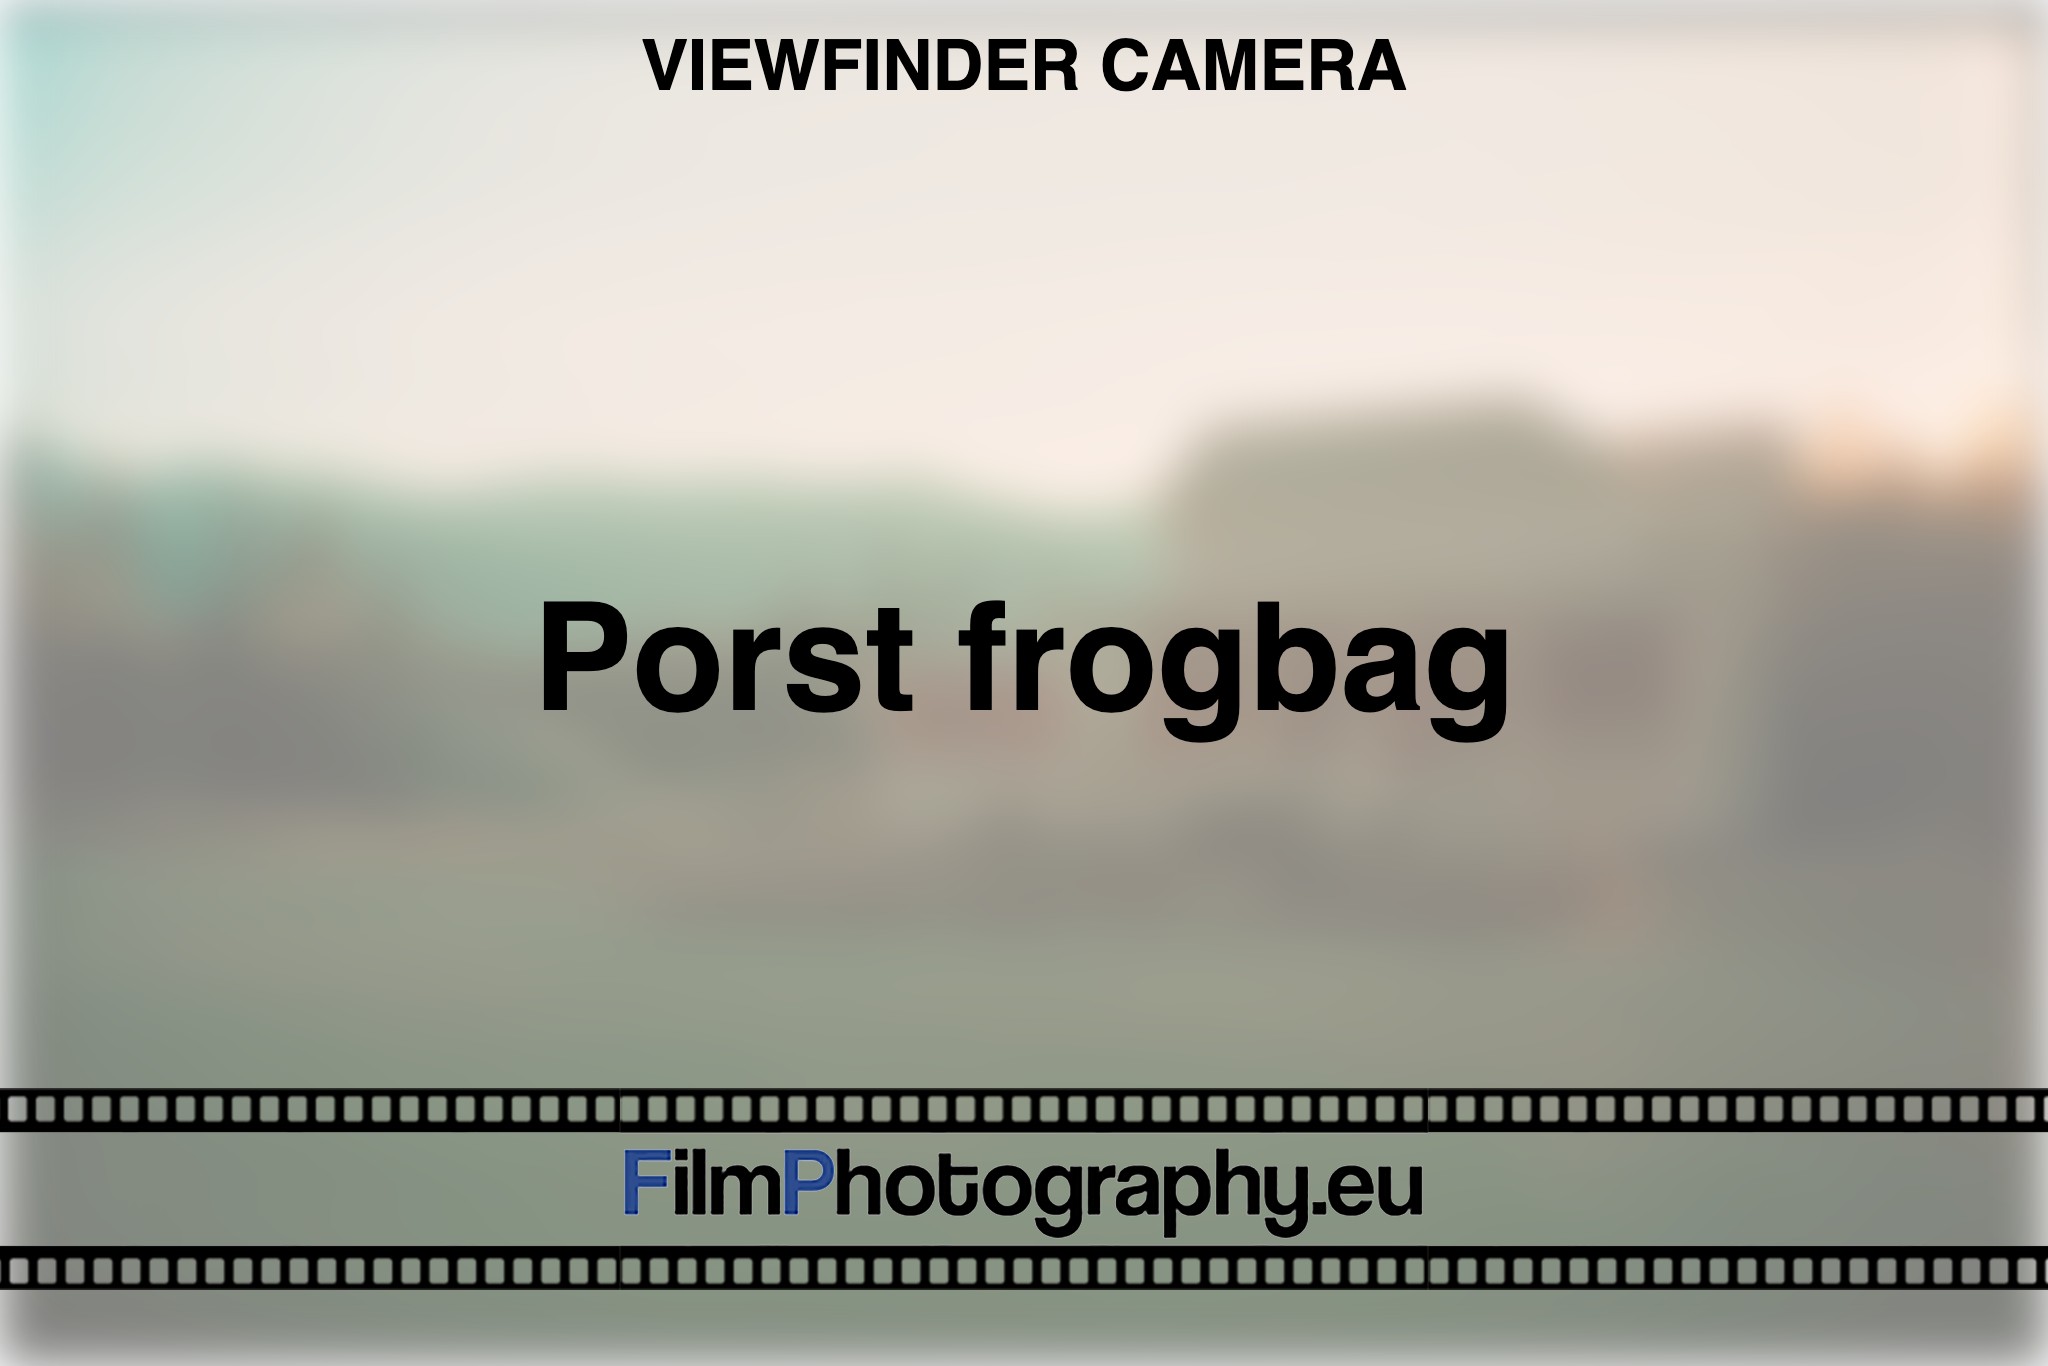 porst-frogbag-viewfinder-camera-bnv